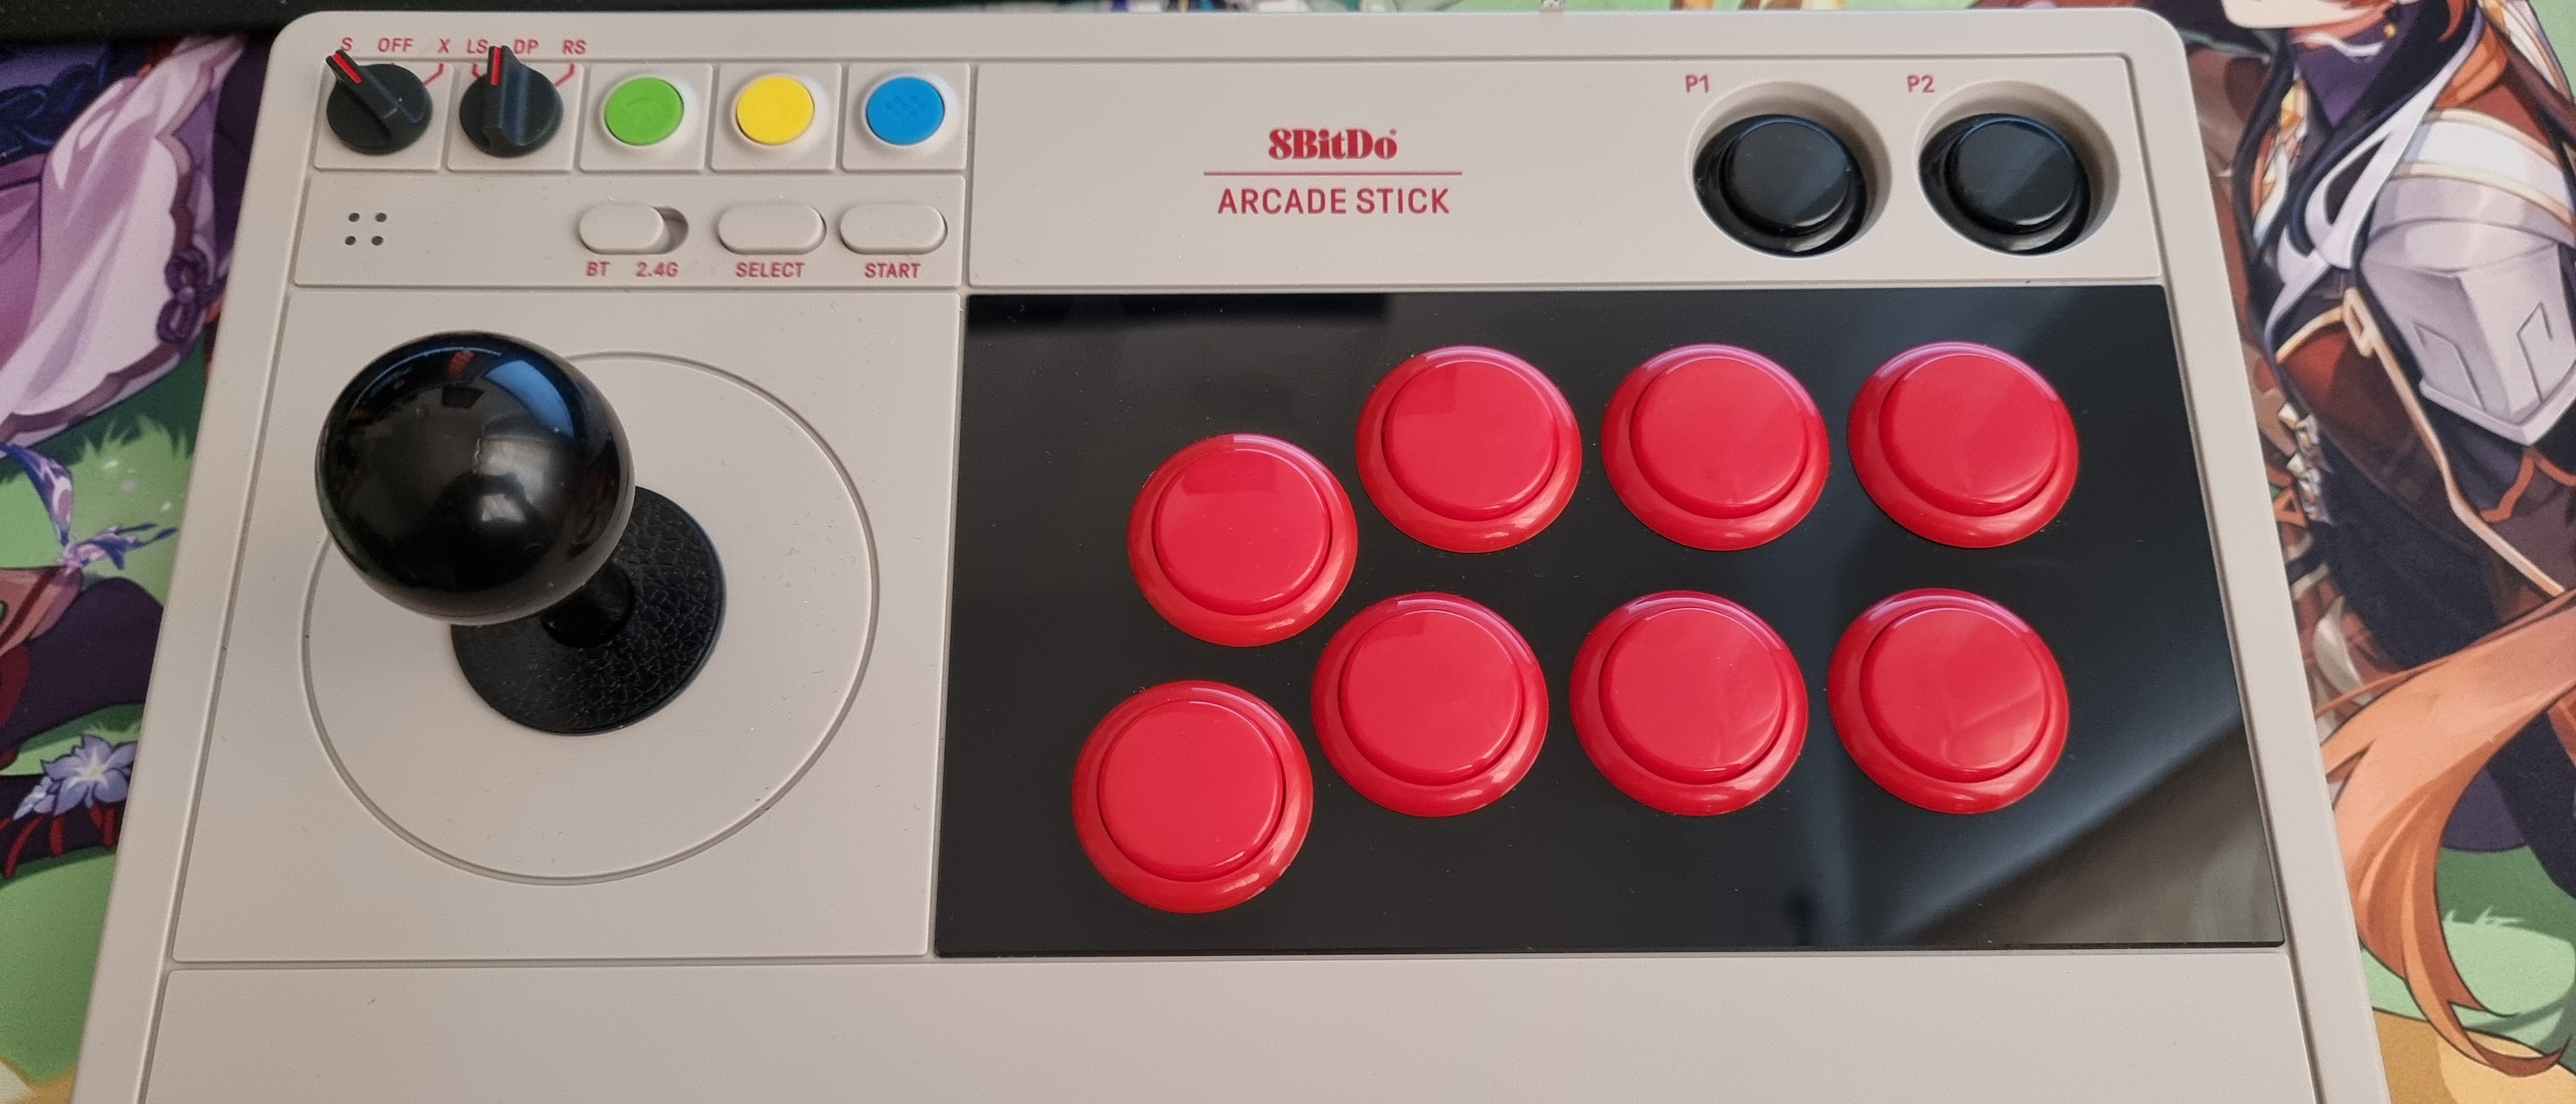 Top Budget Arcade Sticks 2023 - The Arcade Stick